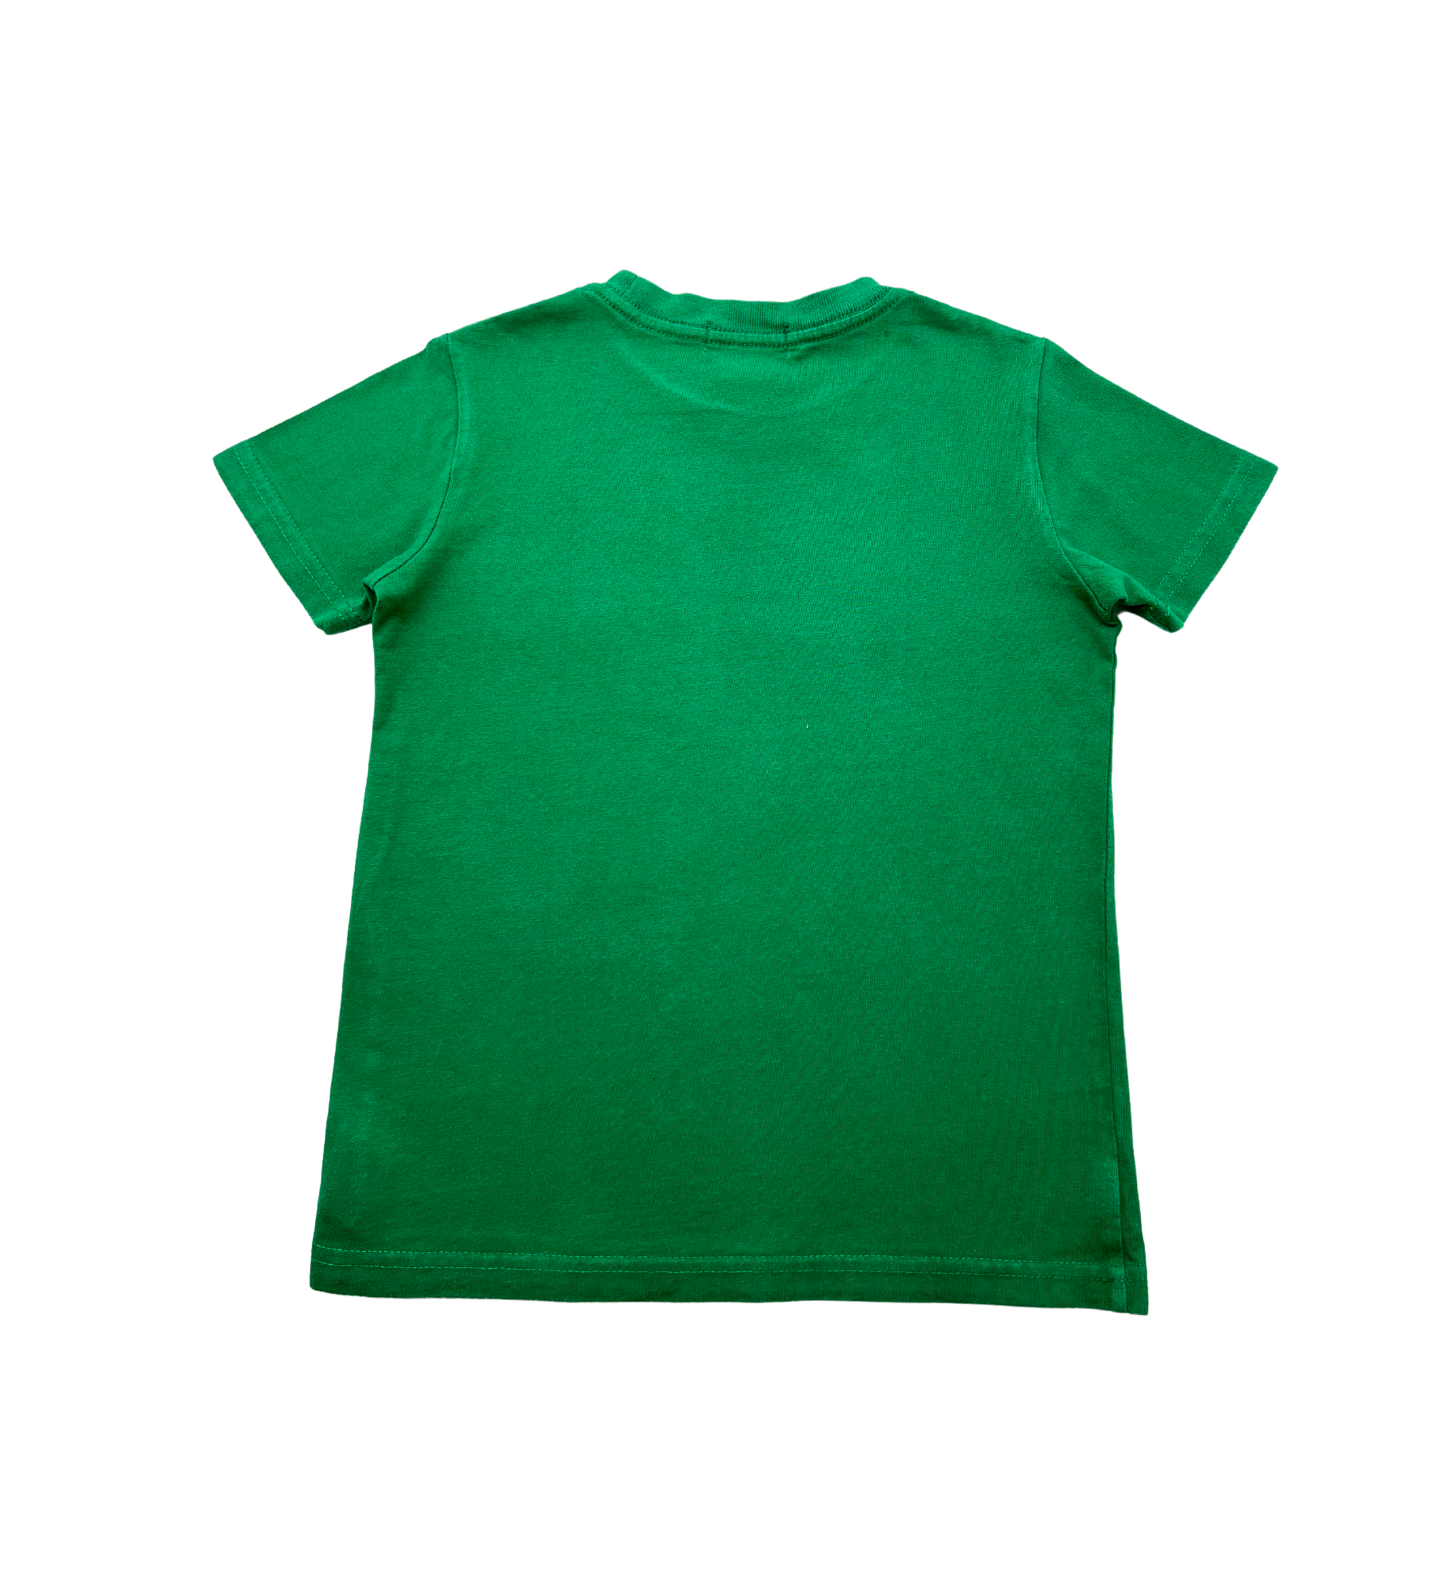 RALPH LAUREN - Green T-shirt - 5 years old